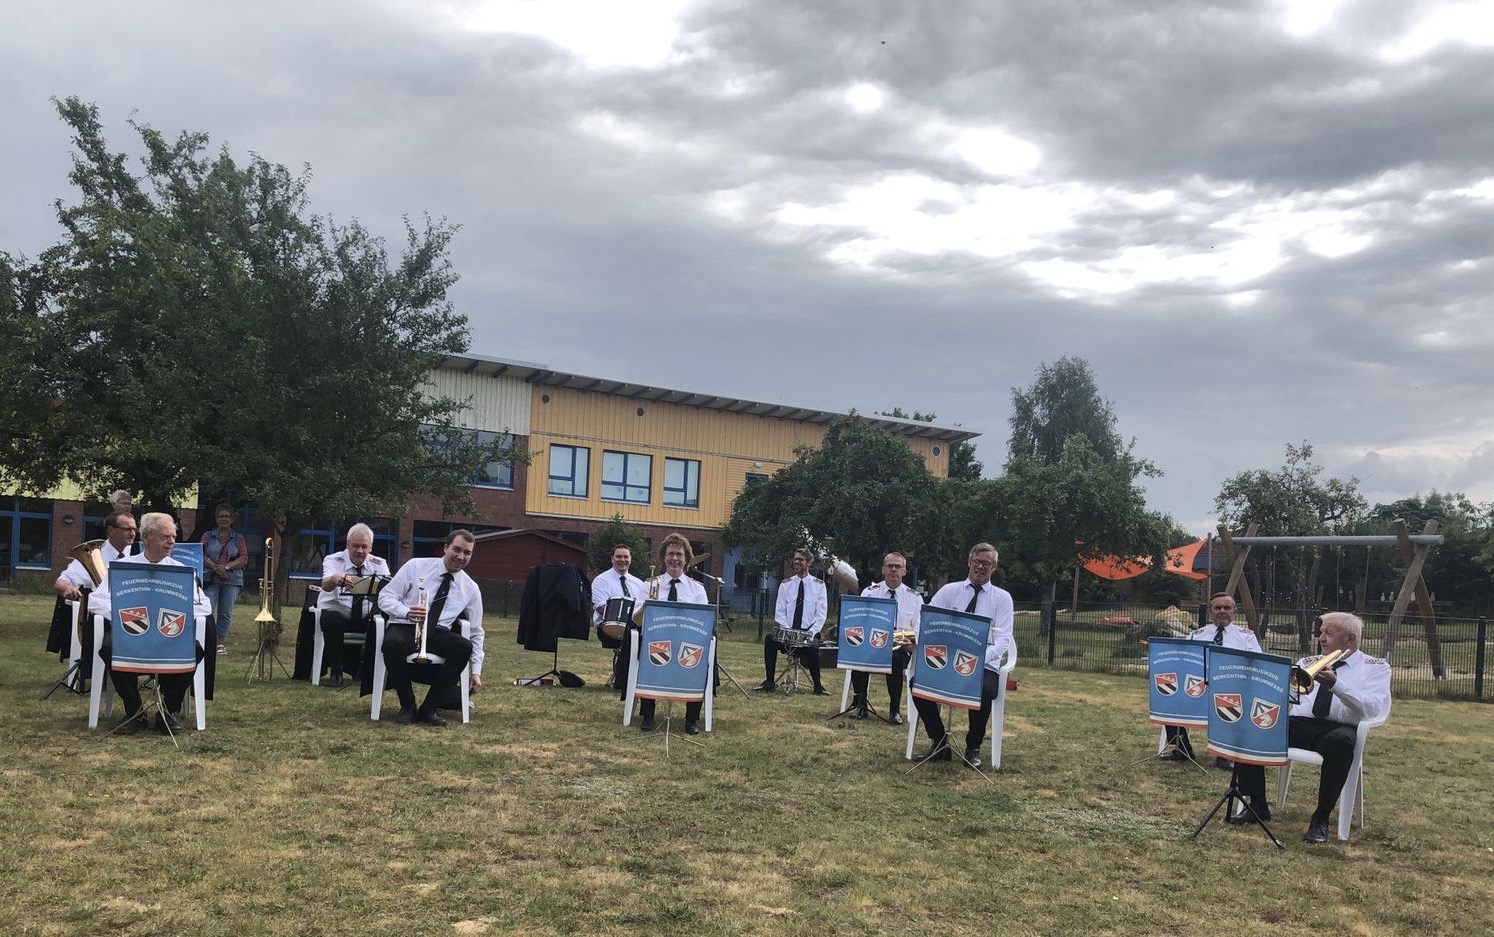 Feuerwehrmusikzug Berkenthin-Krummesse Spielt Für Bewohner Des DRK-Seniorenhauses In Berkenthin